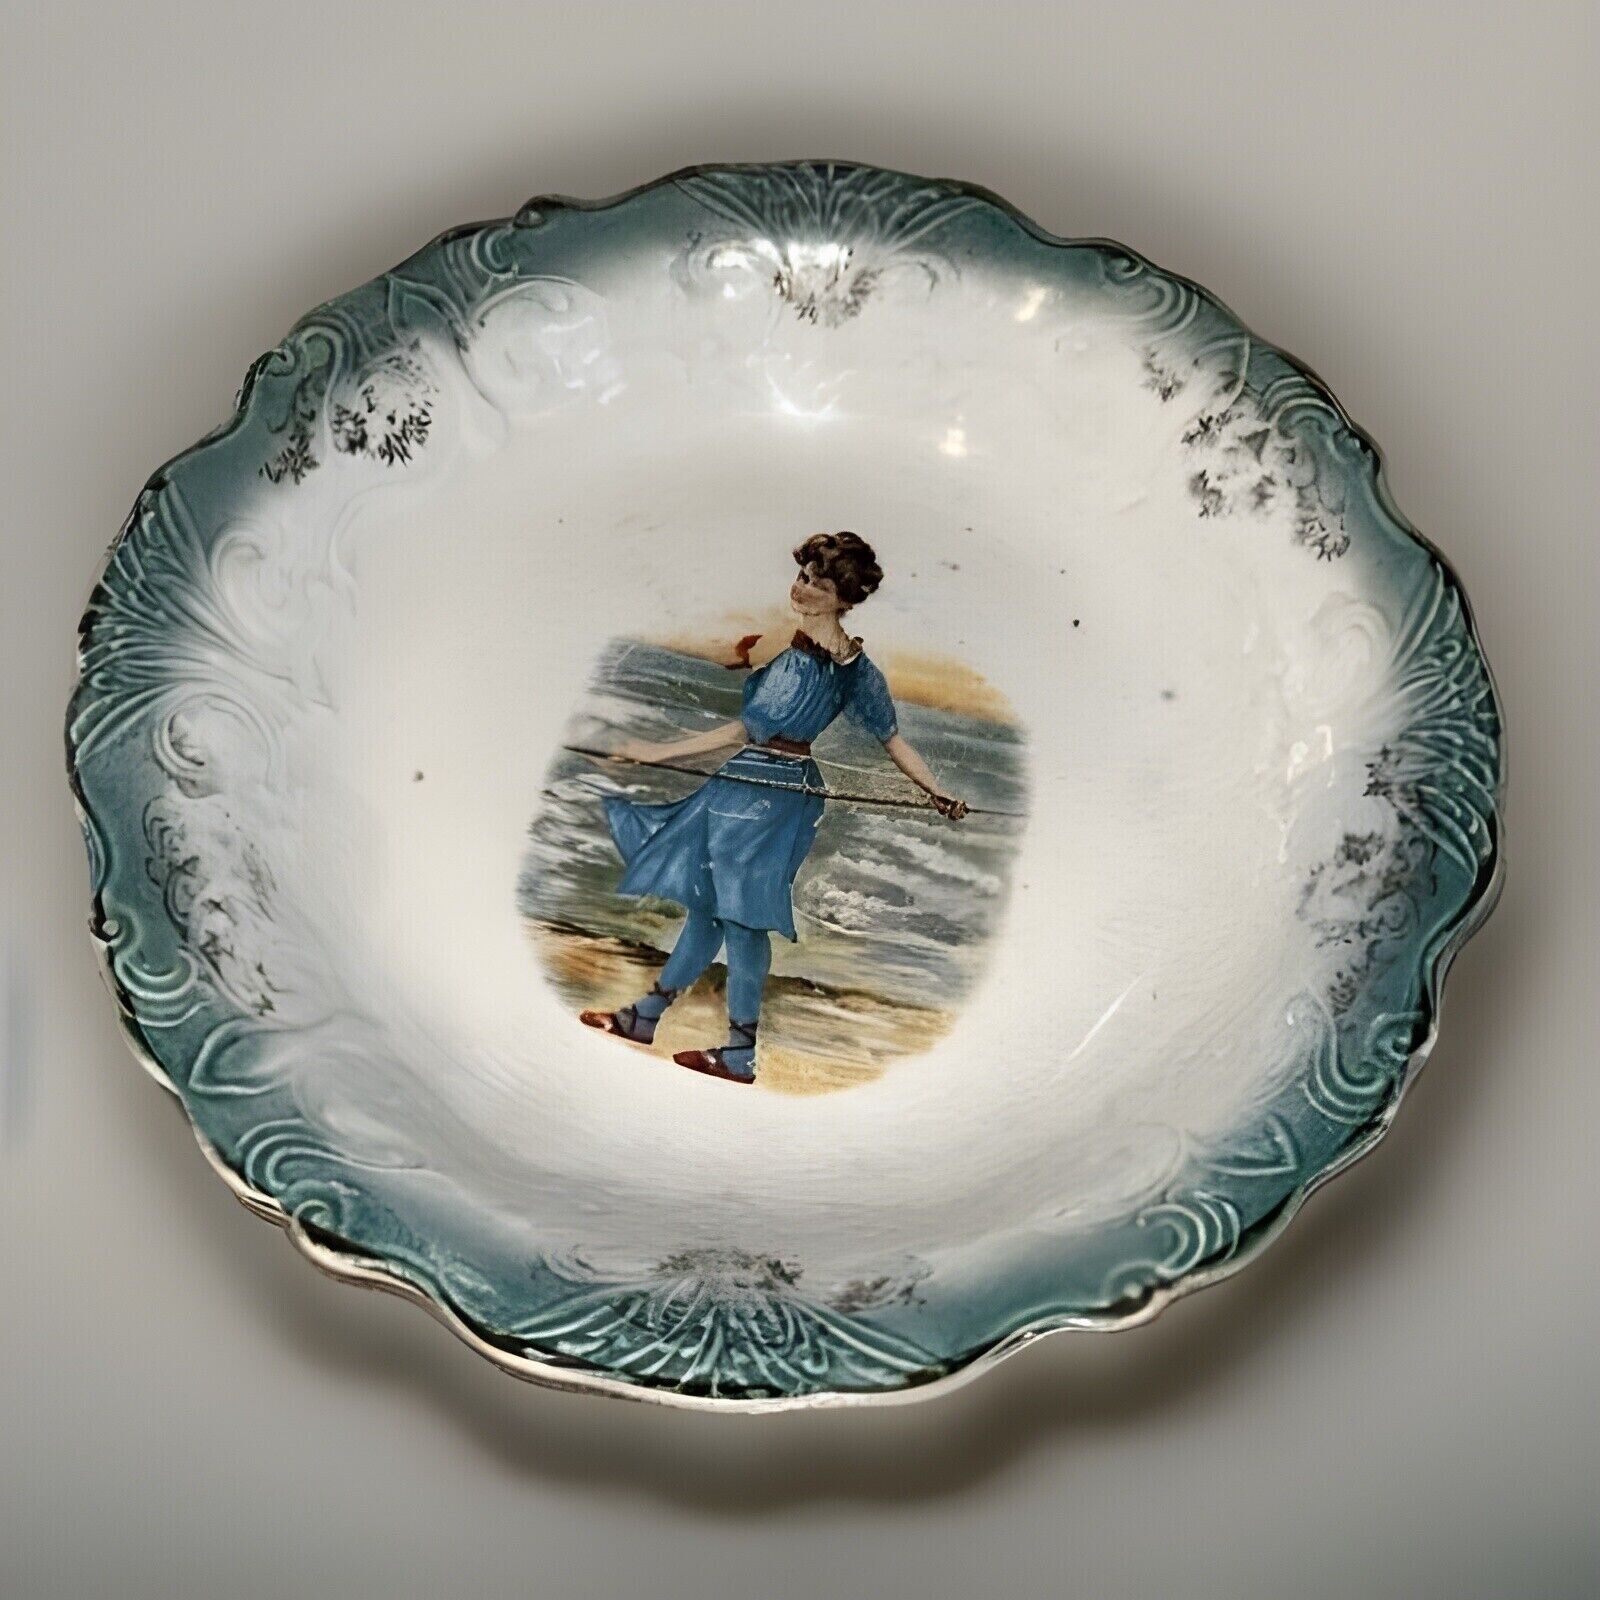 Antique LaFranciase Porcelain Bowl With Portrait Bathing Beauty